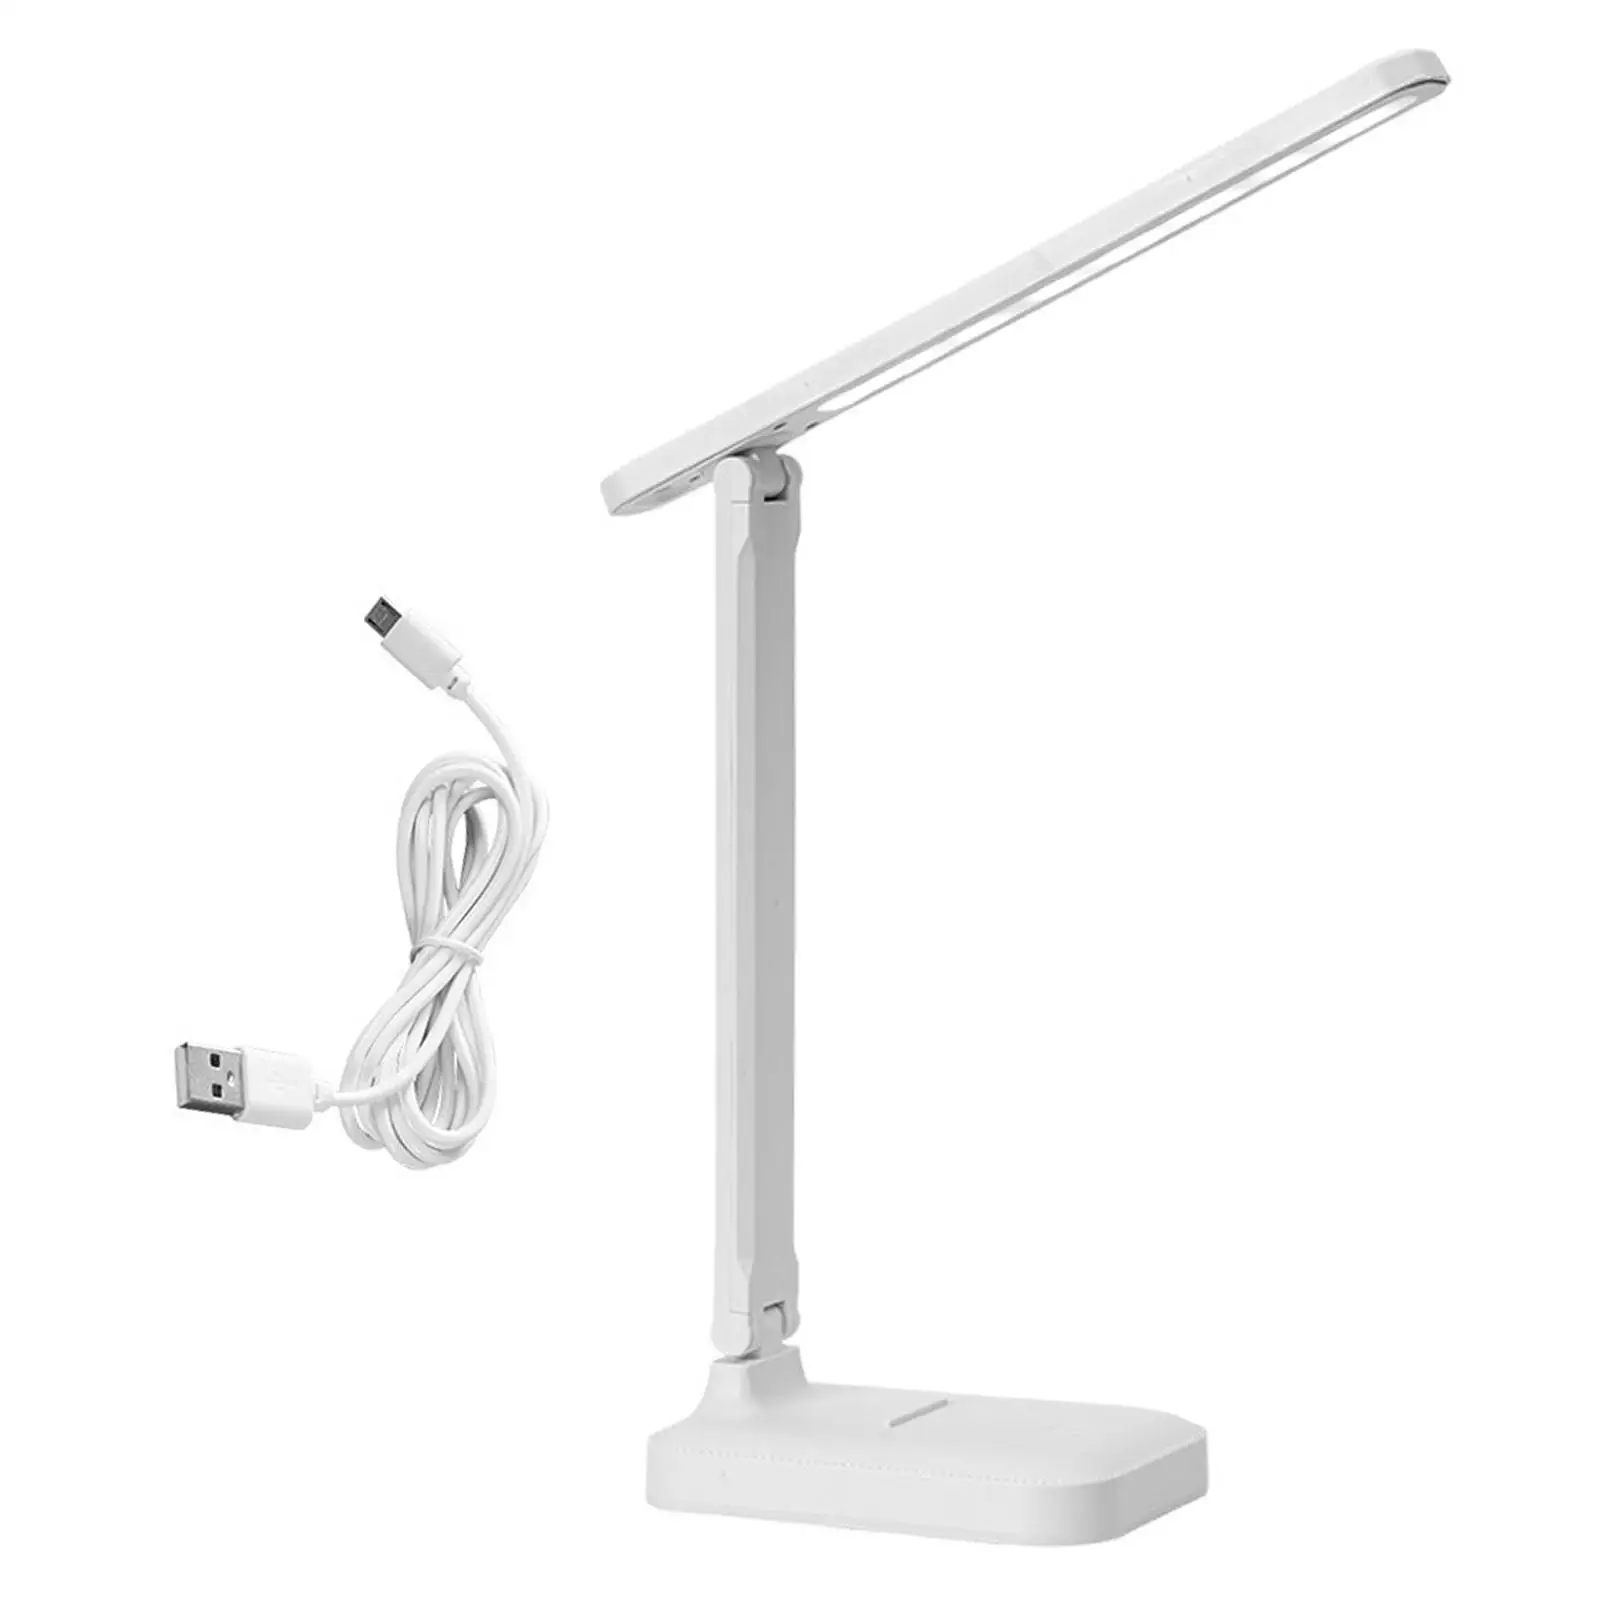 Foldable LED Desk Lamp Bedside Adjustable Lights Portable No Flicker Table Lamp Study Desk for Living Room Home Office Gift Dorm